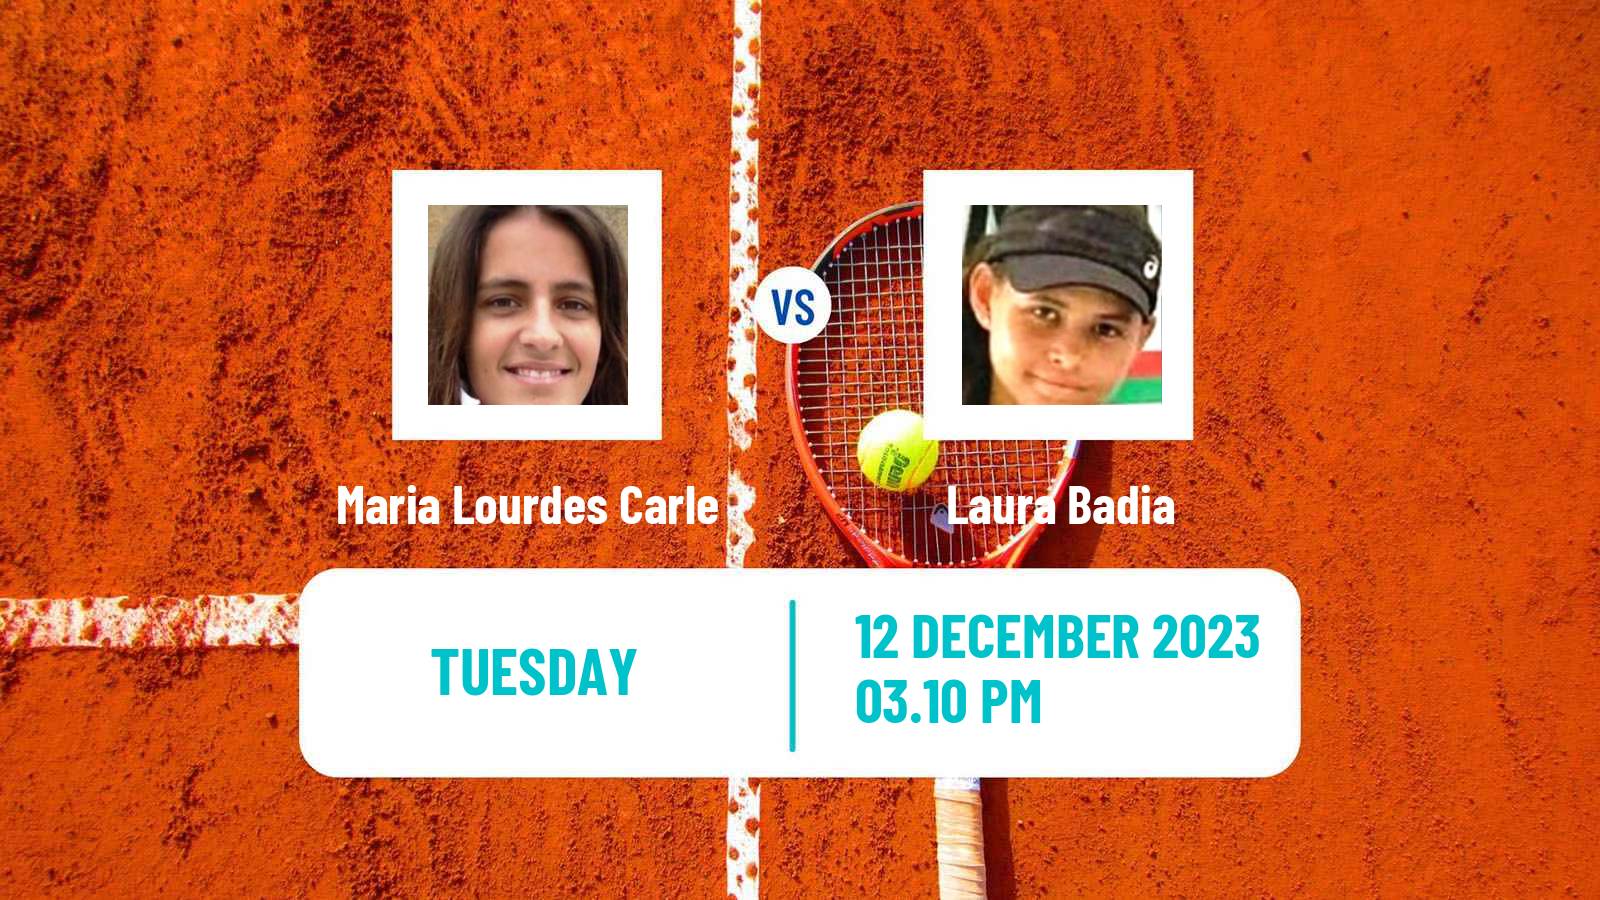 Tennis ITF W60 Vacaria Women Maria Lourdes Carle - Laura Badia